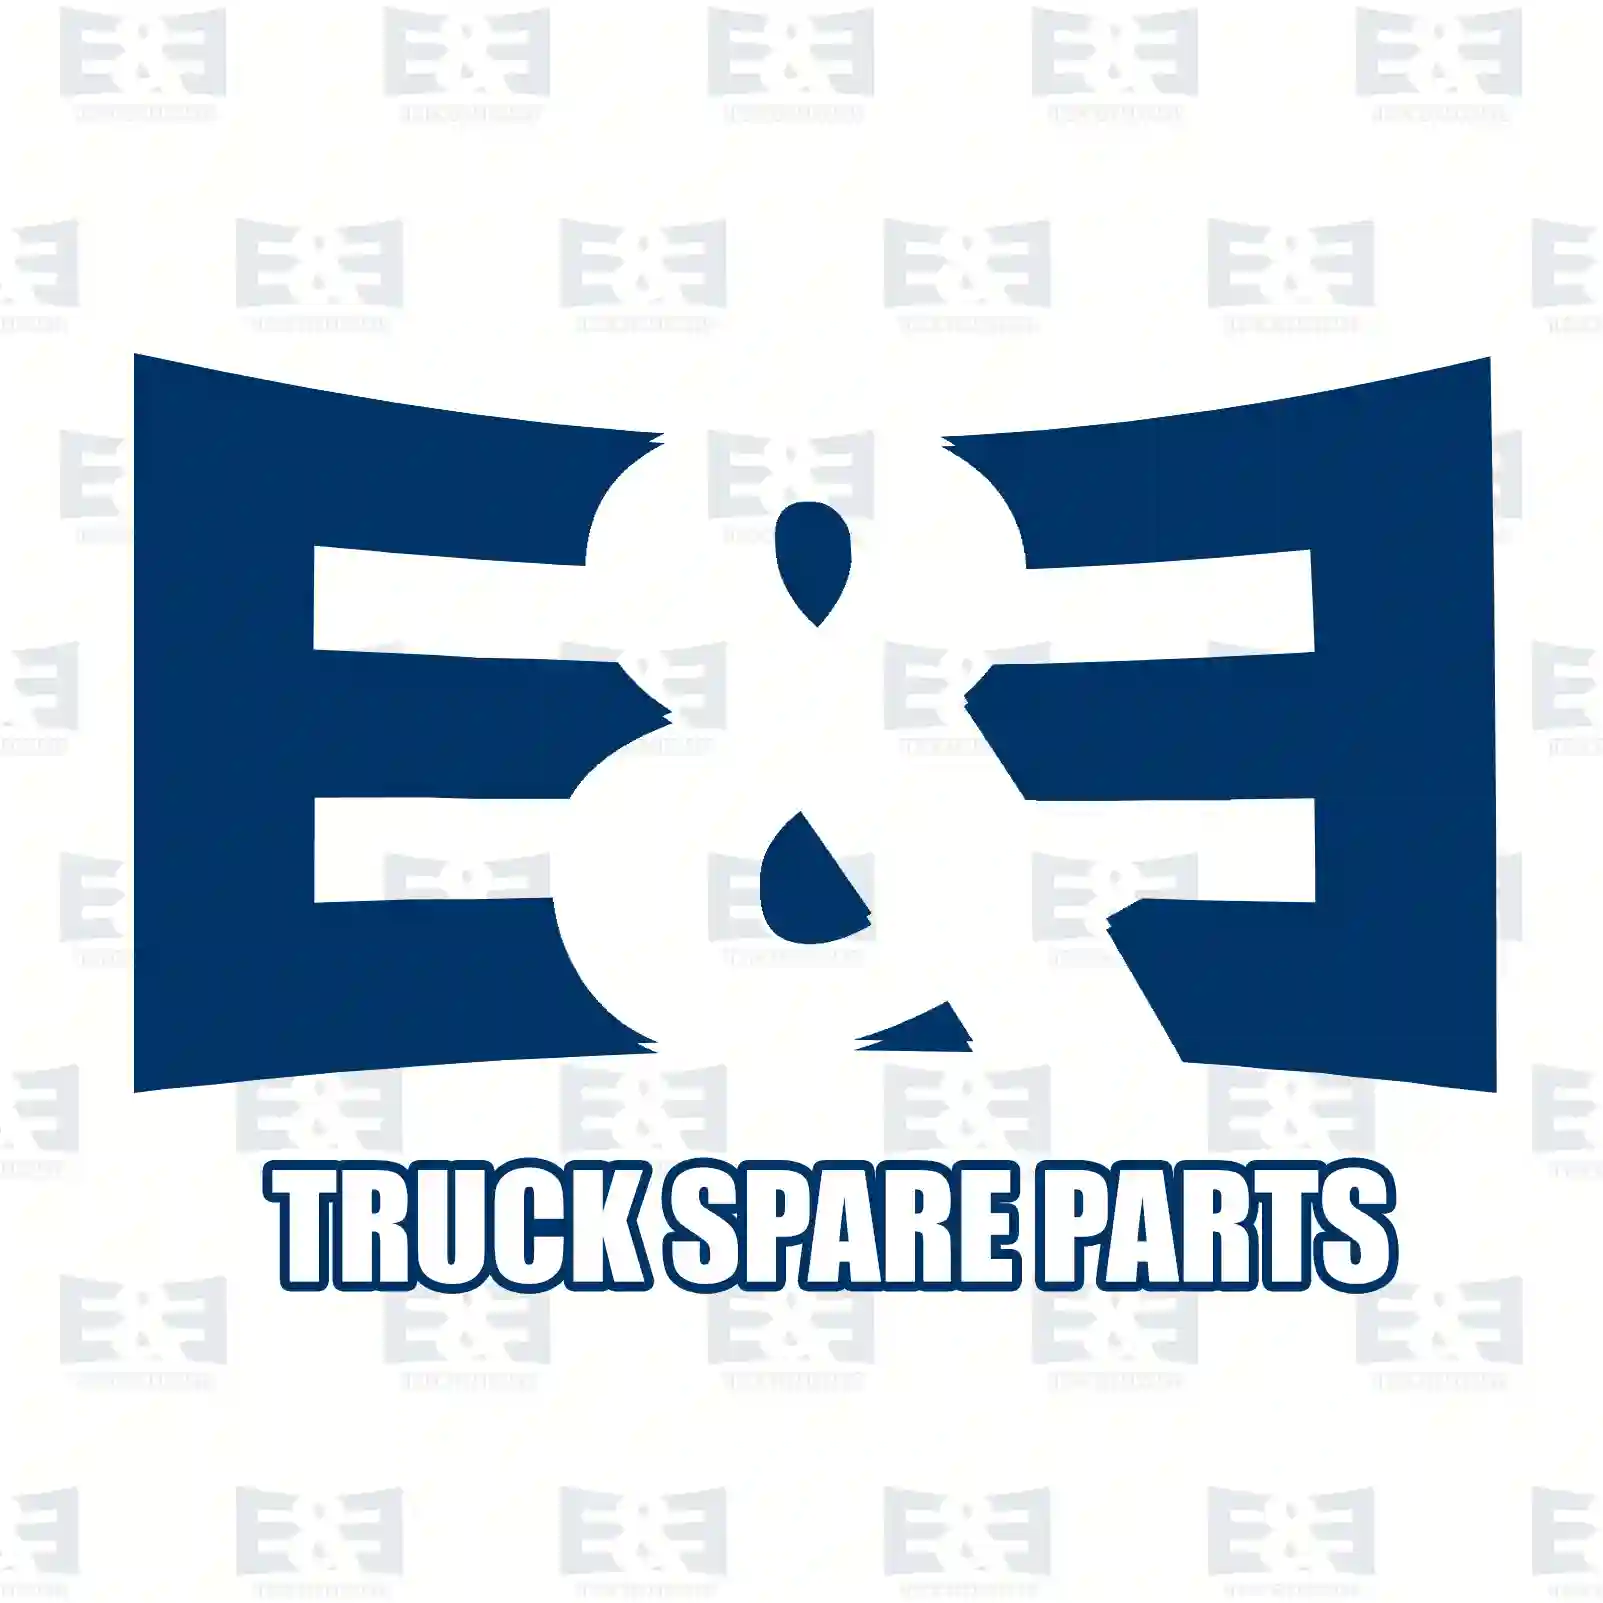 O-ring, 2E2286131, 392520, 810964, ZG02836-0008, ||  2E2286131 E&E Truck Spare Parts | Truck Spare Parts, Auotomotive Spare Parts O-ring, 2E2286131, 392520, 810964, ZG02836-0008, ||  2E2286131 E&E Truck Spare Parts | Truck Spare Parts, Auotomotive Spare Parts